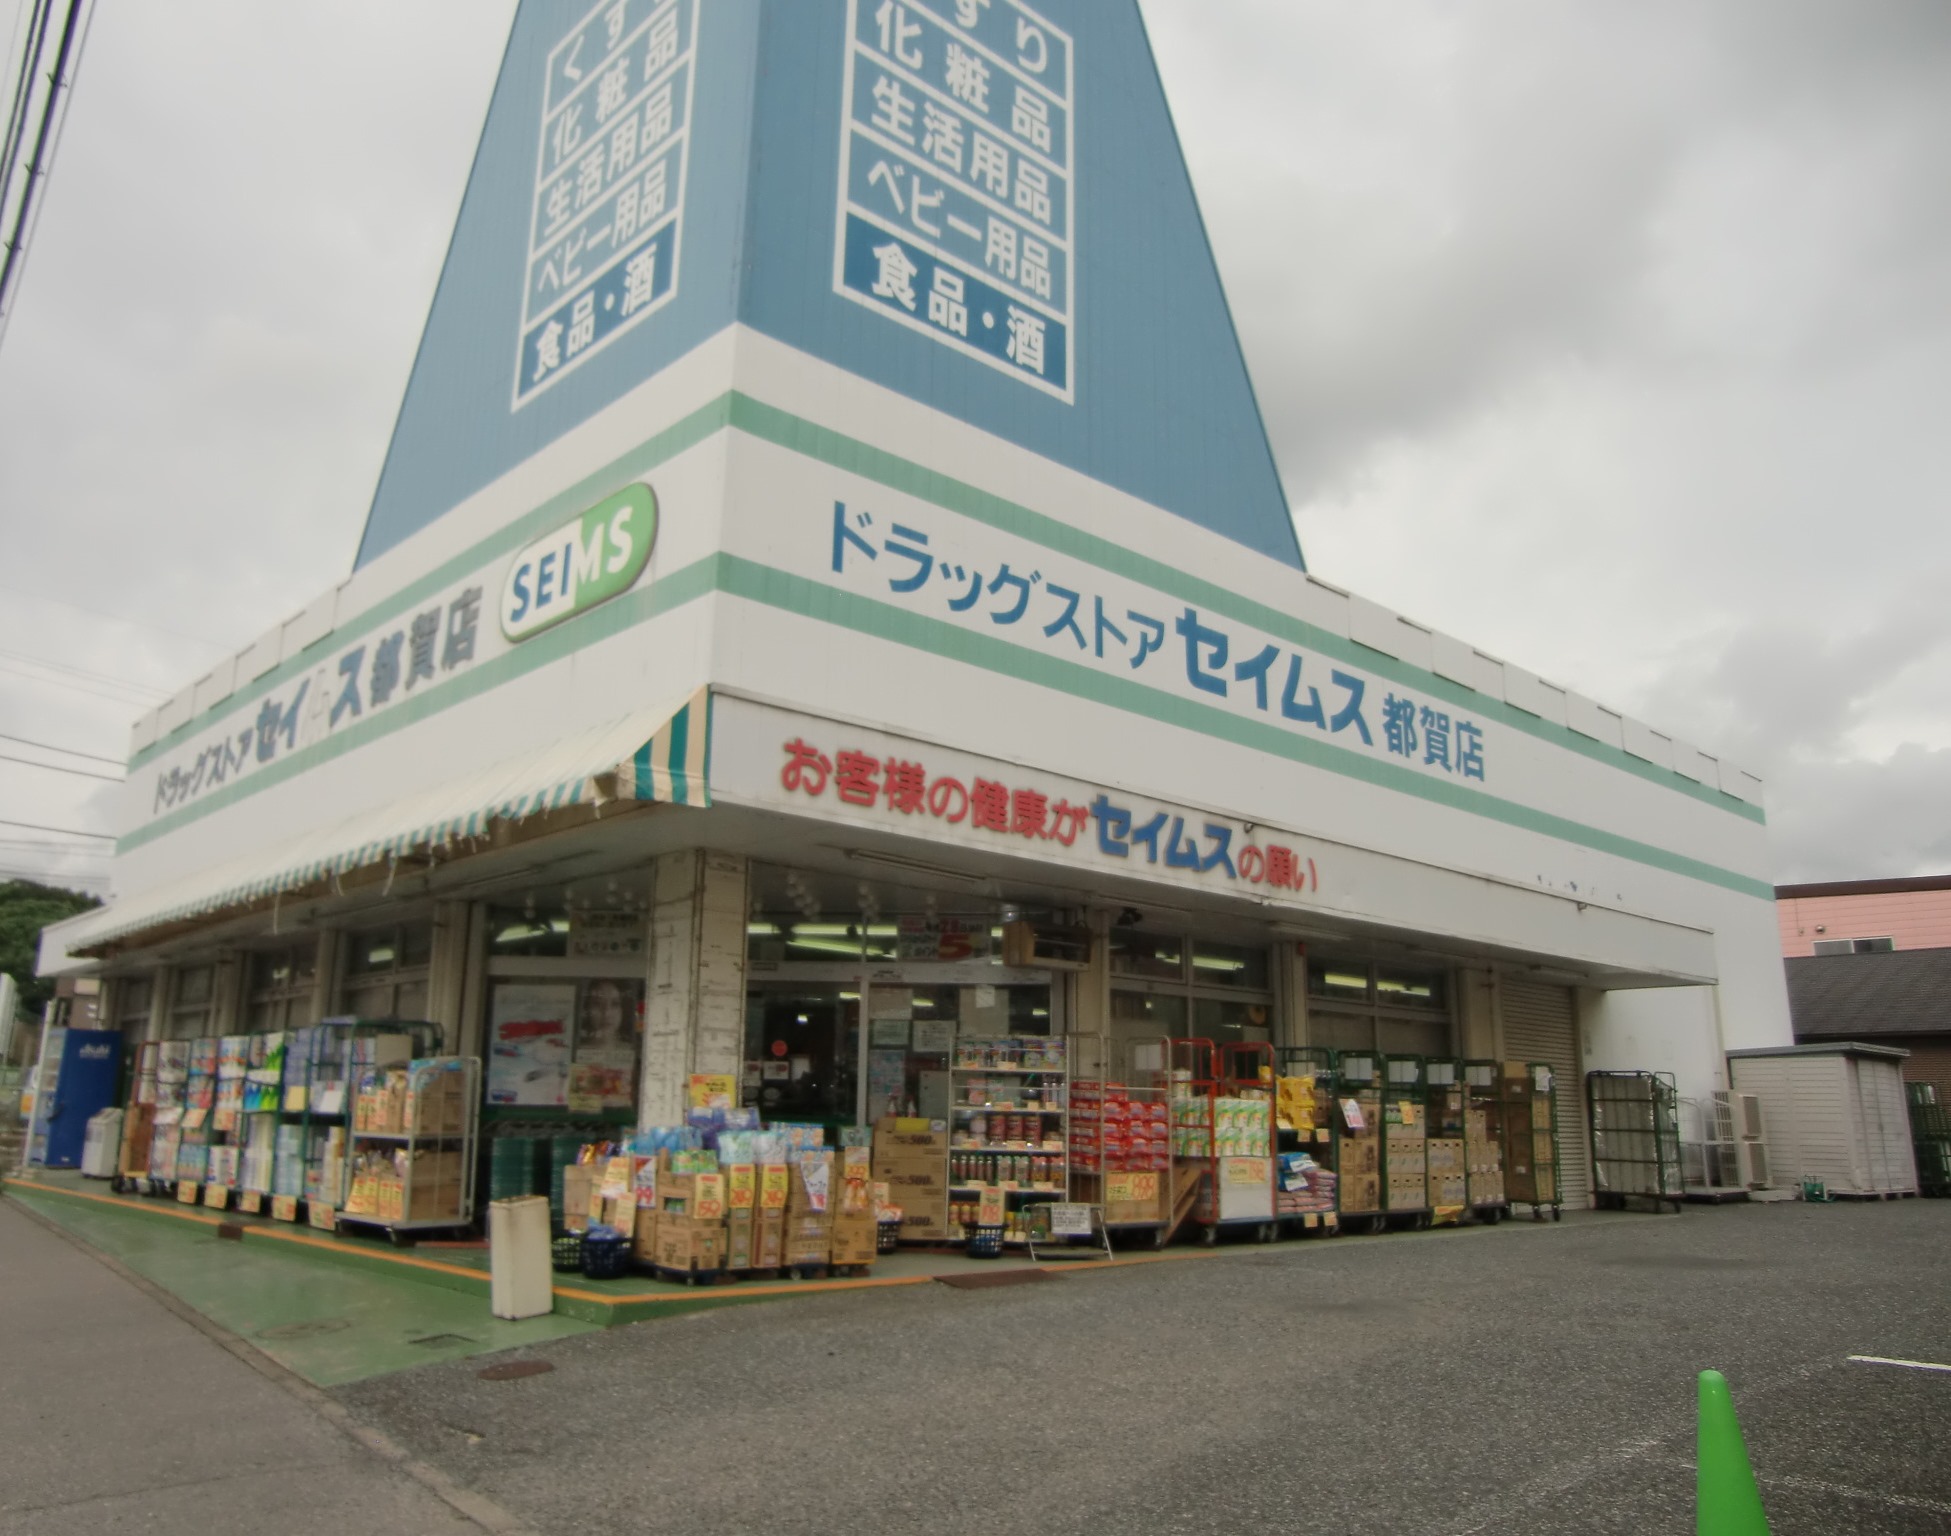 Dorakkusutoa. Drag Seimusu Tsuga shop 290m until (drugstore)